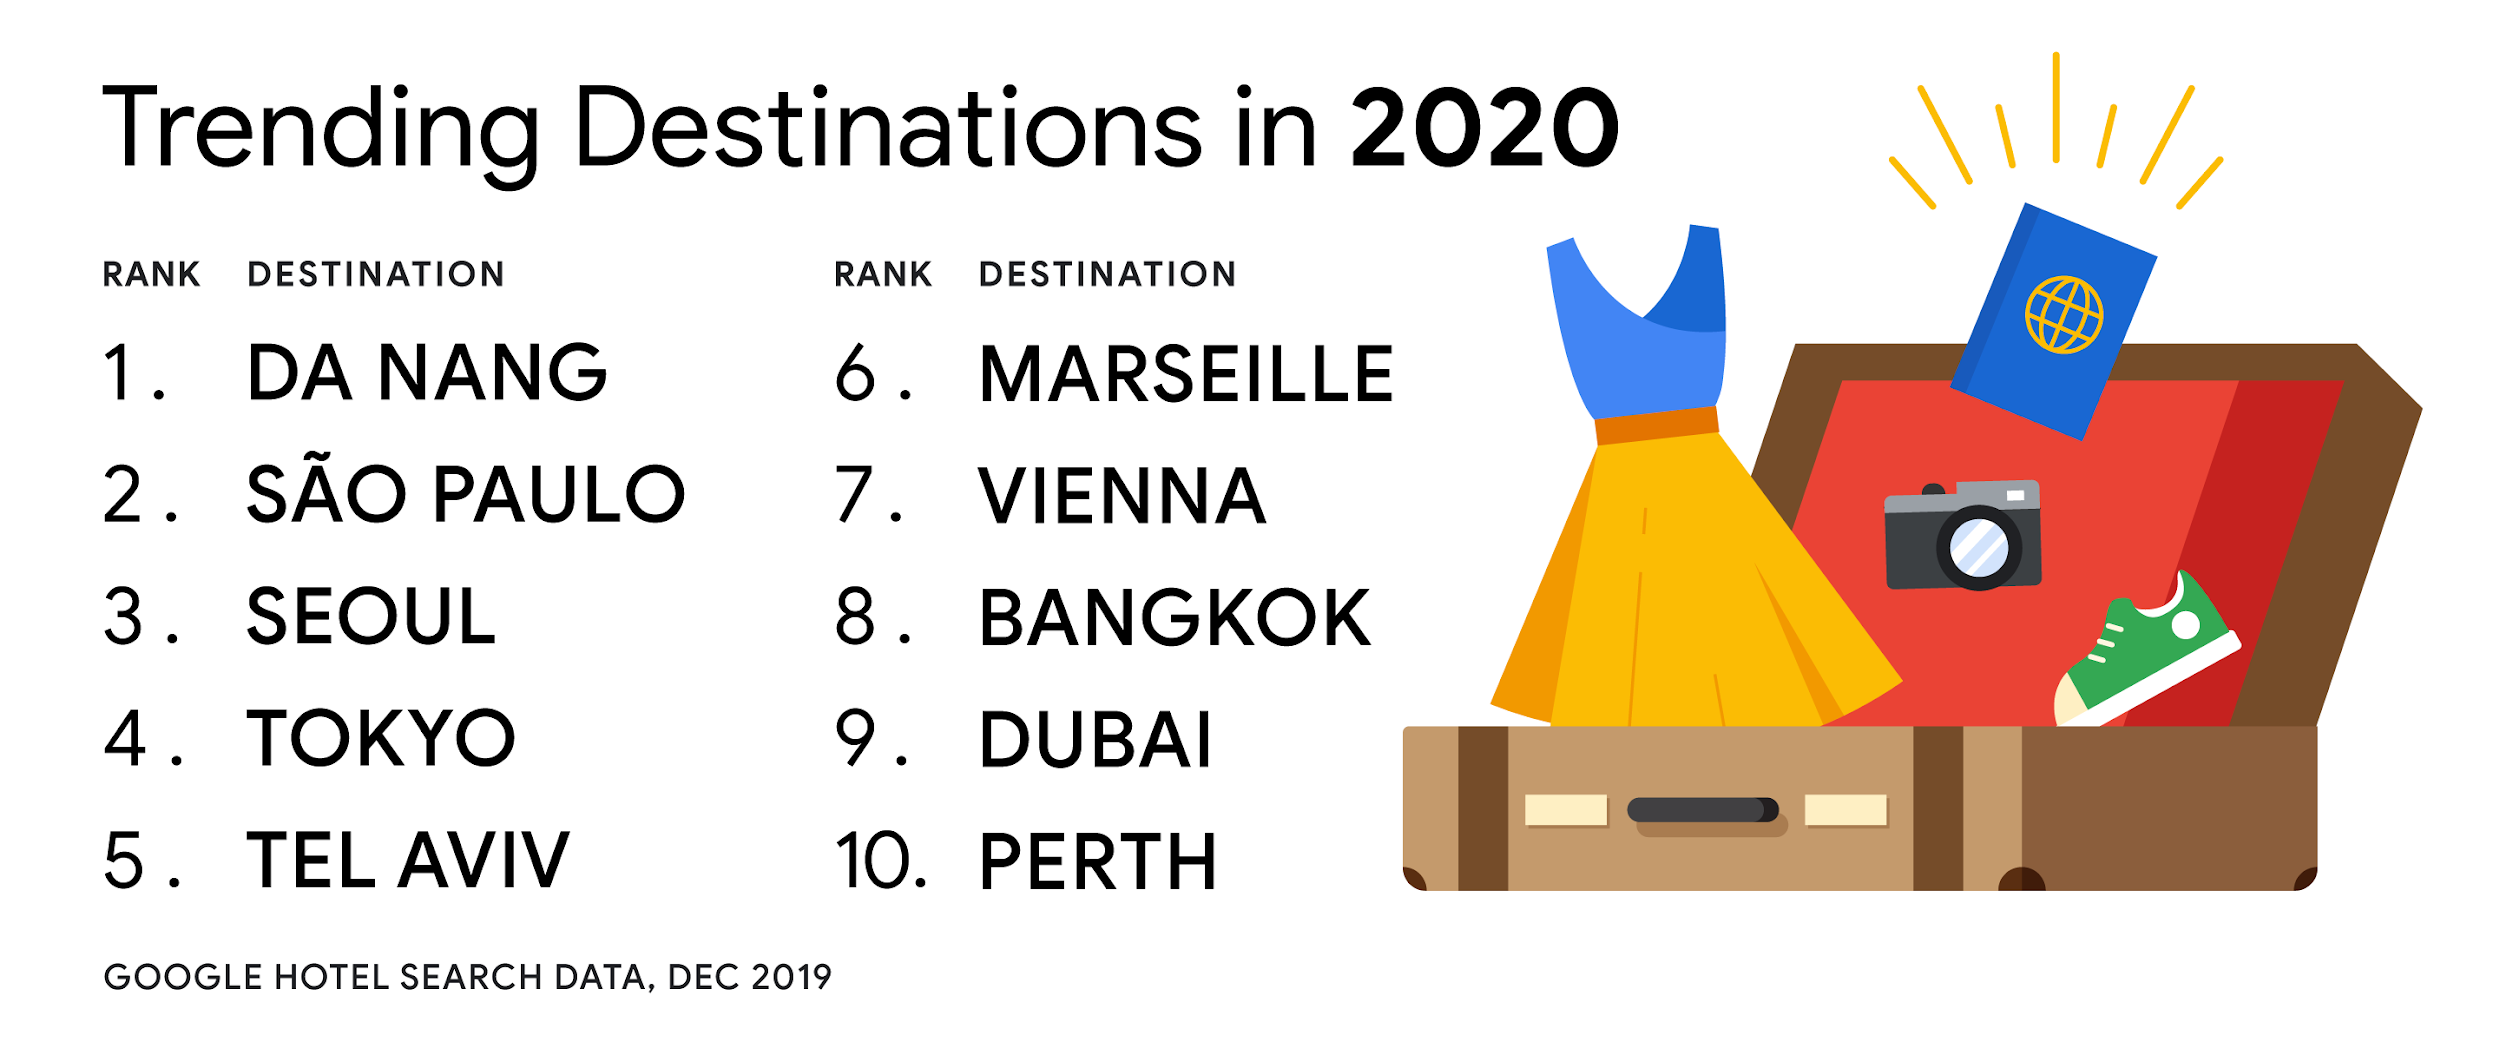 Đà Nẵng dẫn đầu tìm kiếm khách sạn du lịch trên toàn cầu trong đầu năm 2020